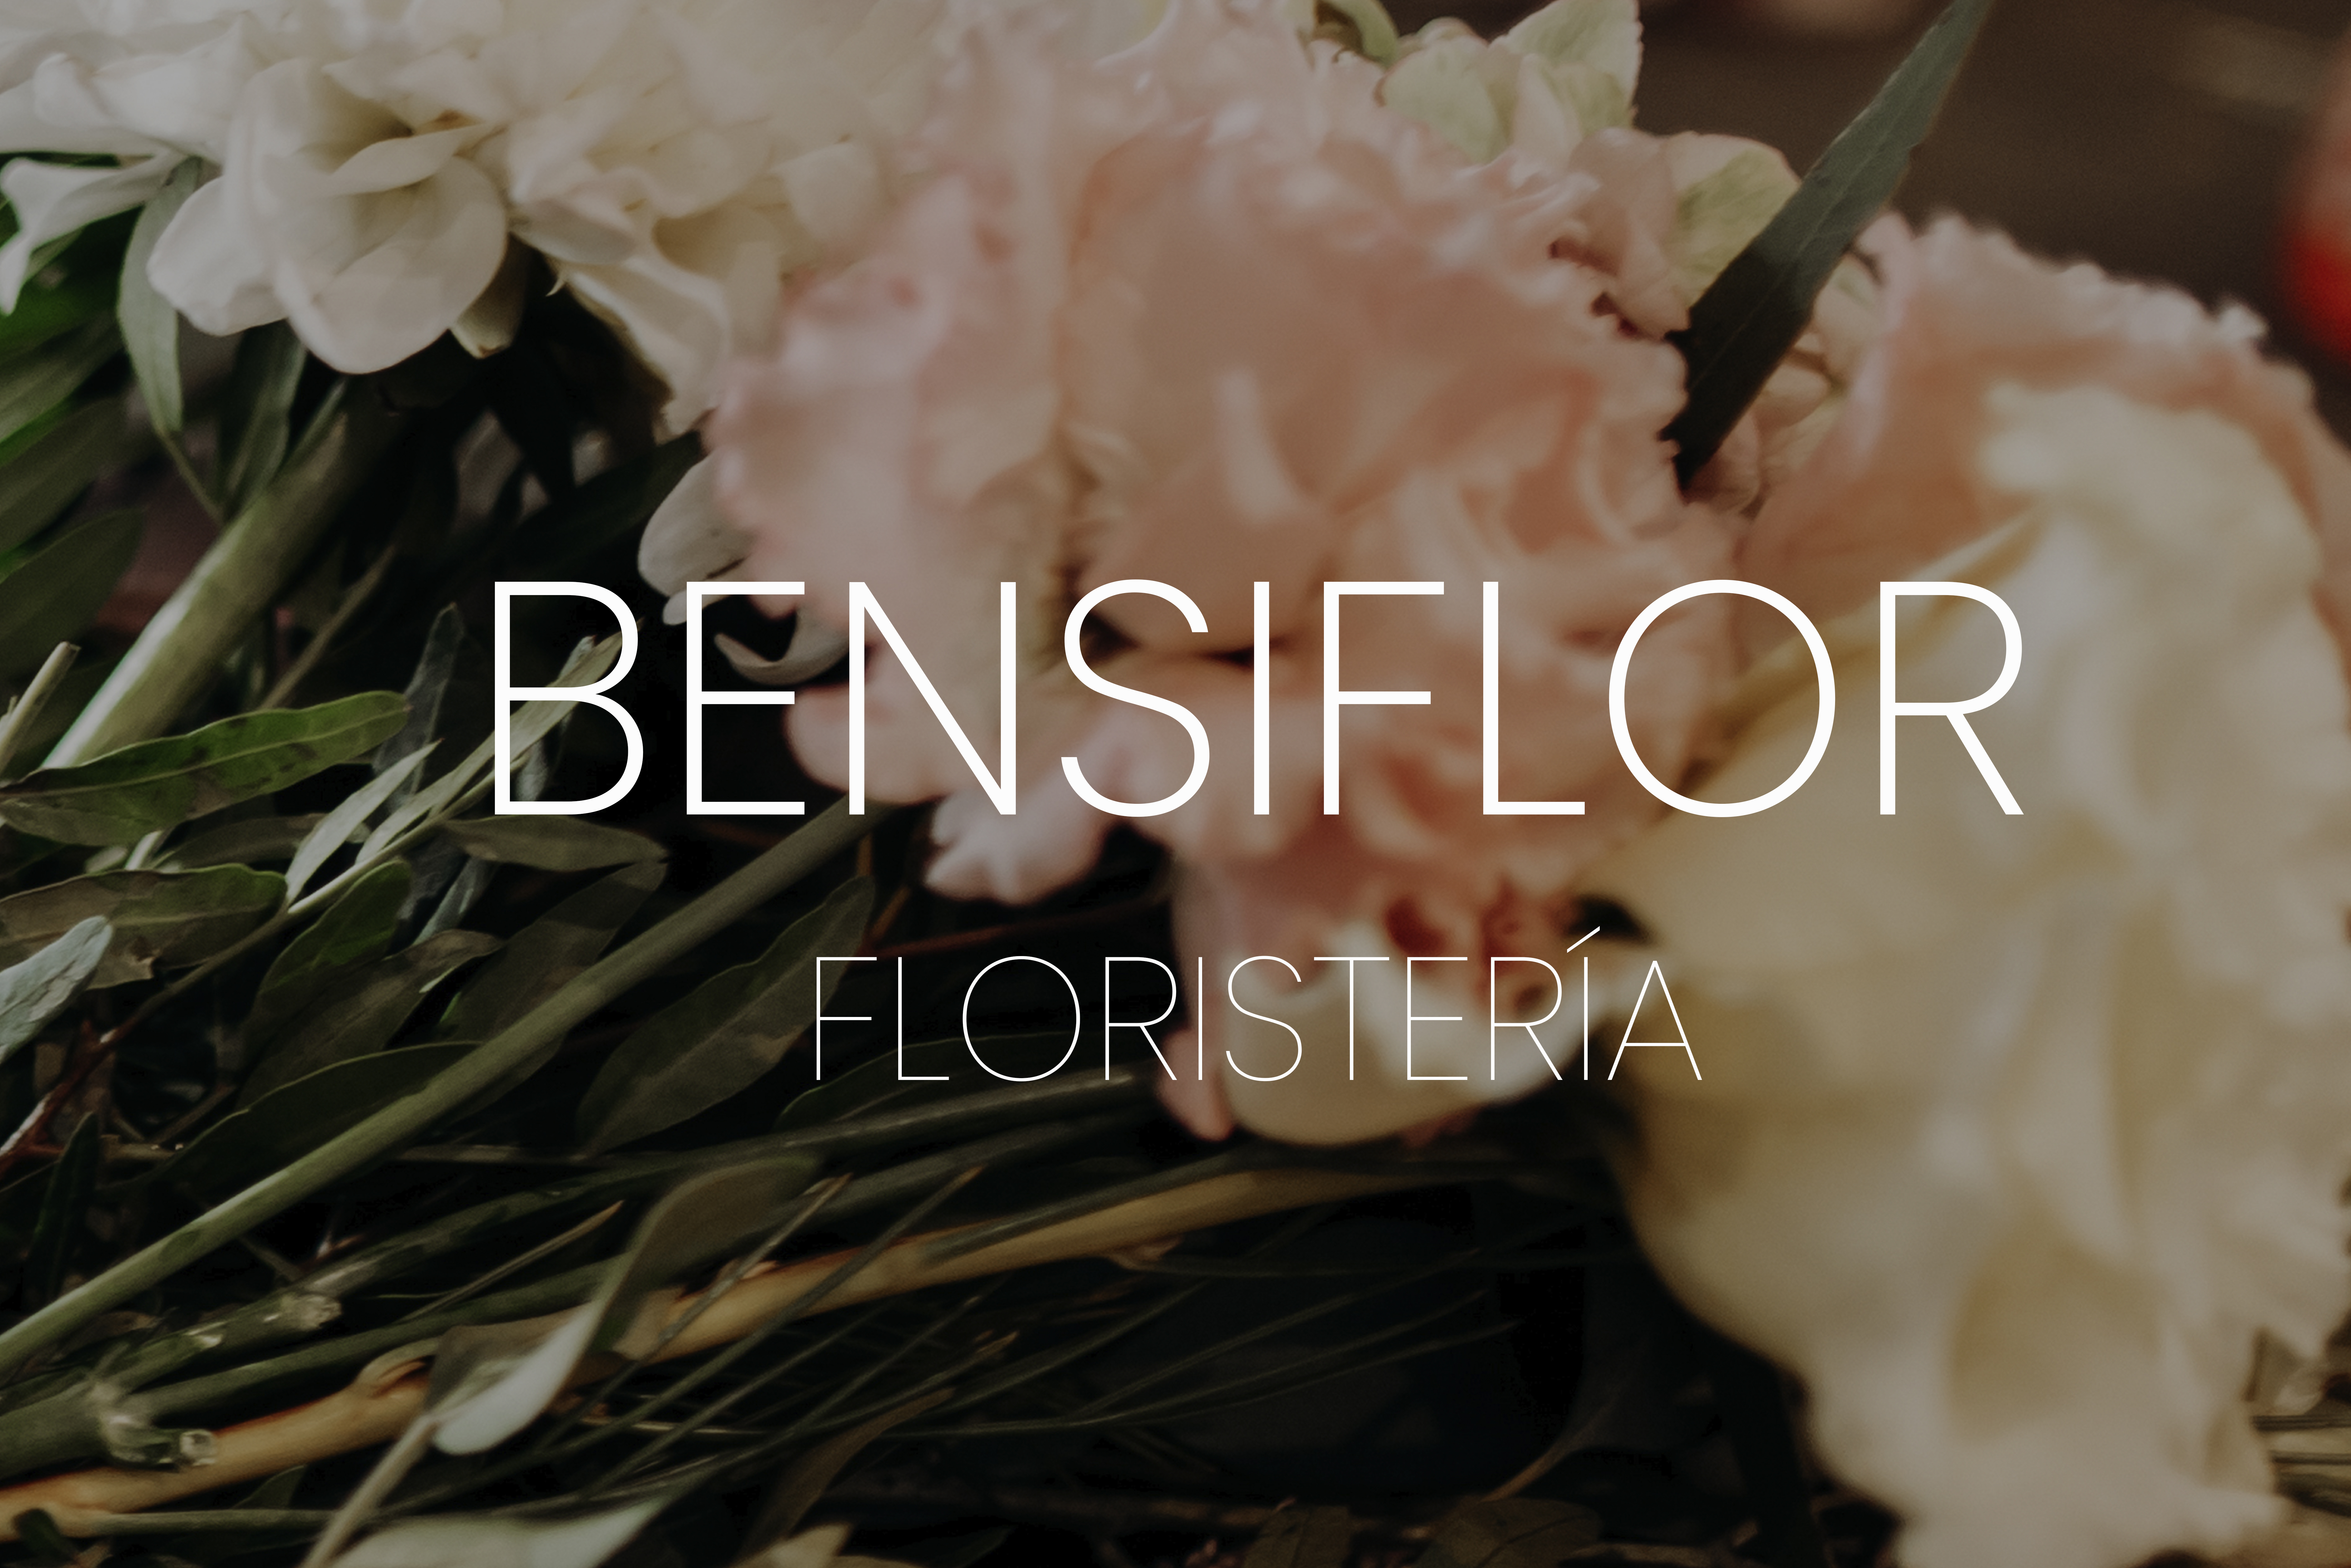 floristeria-utebo-bensiflor-comercio-local-web-empresas